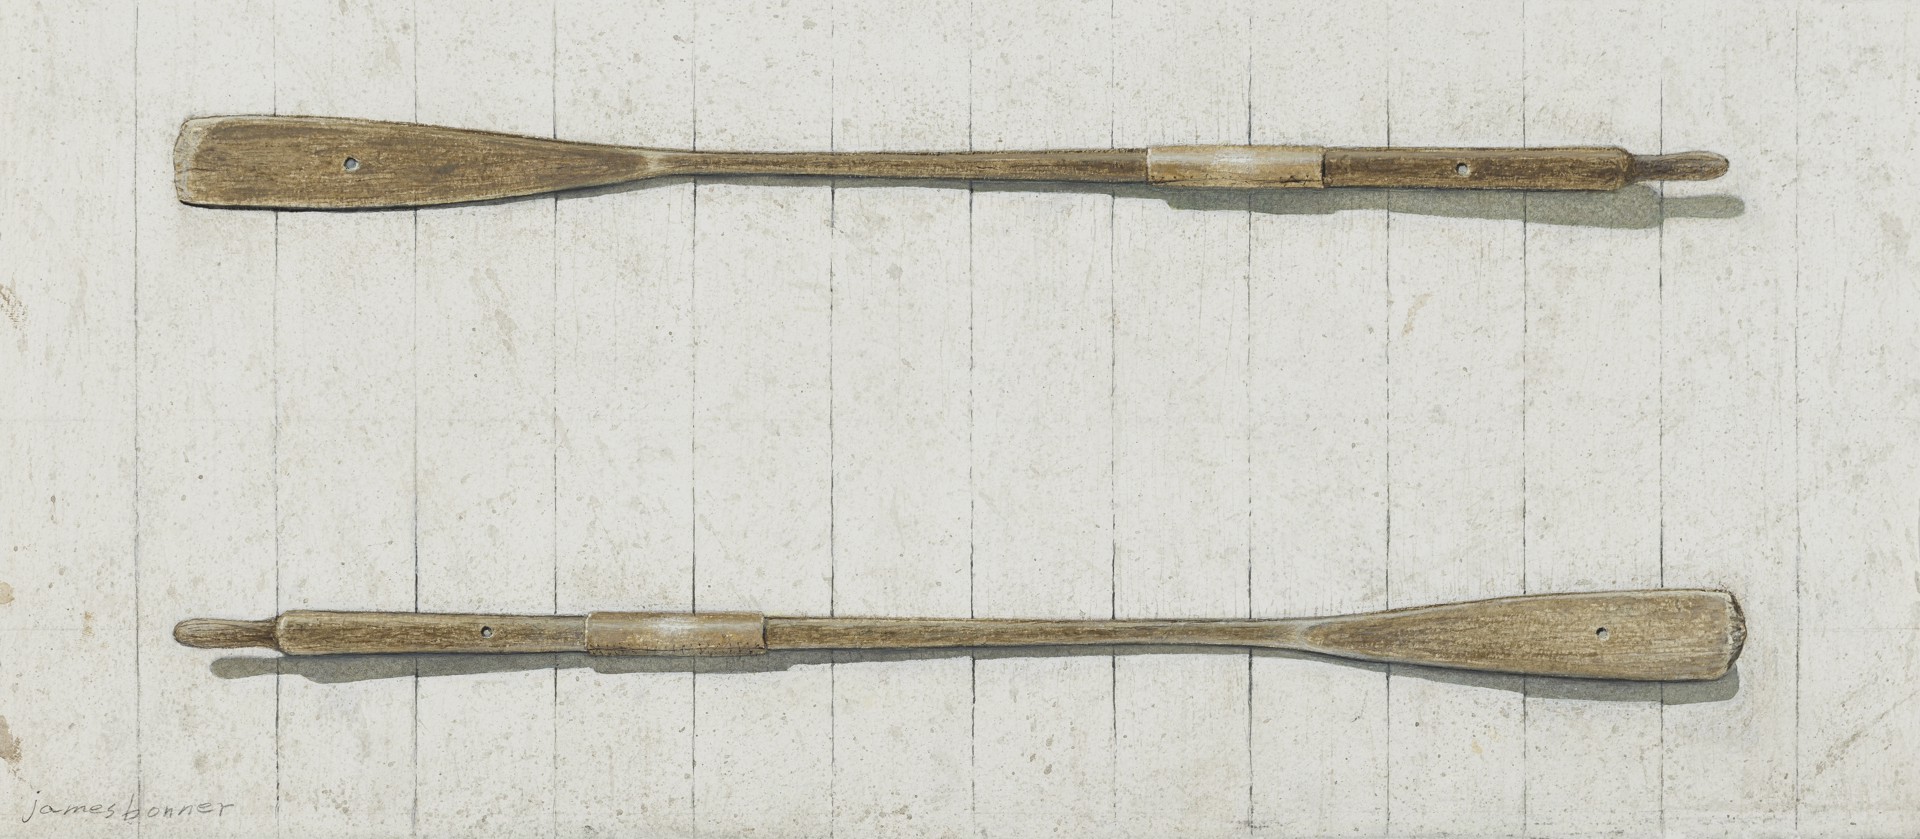 Antique Oars Study by James M. Bonner